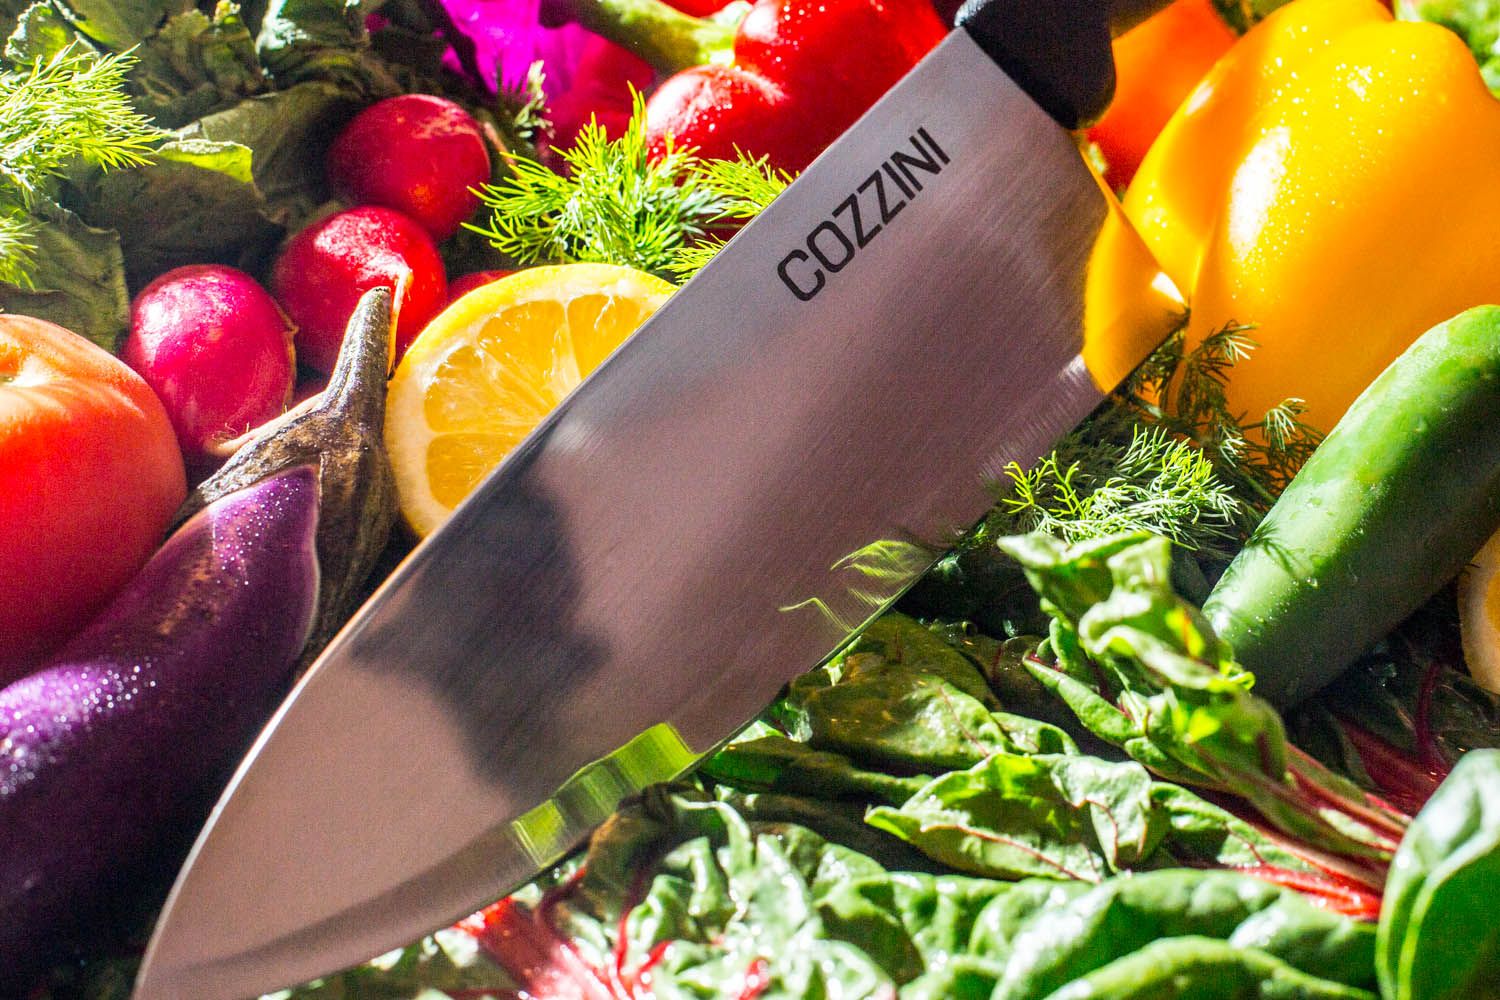 Retired Brush Prairie chef owns knife sharpening business